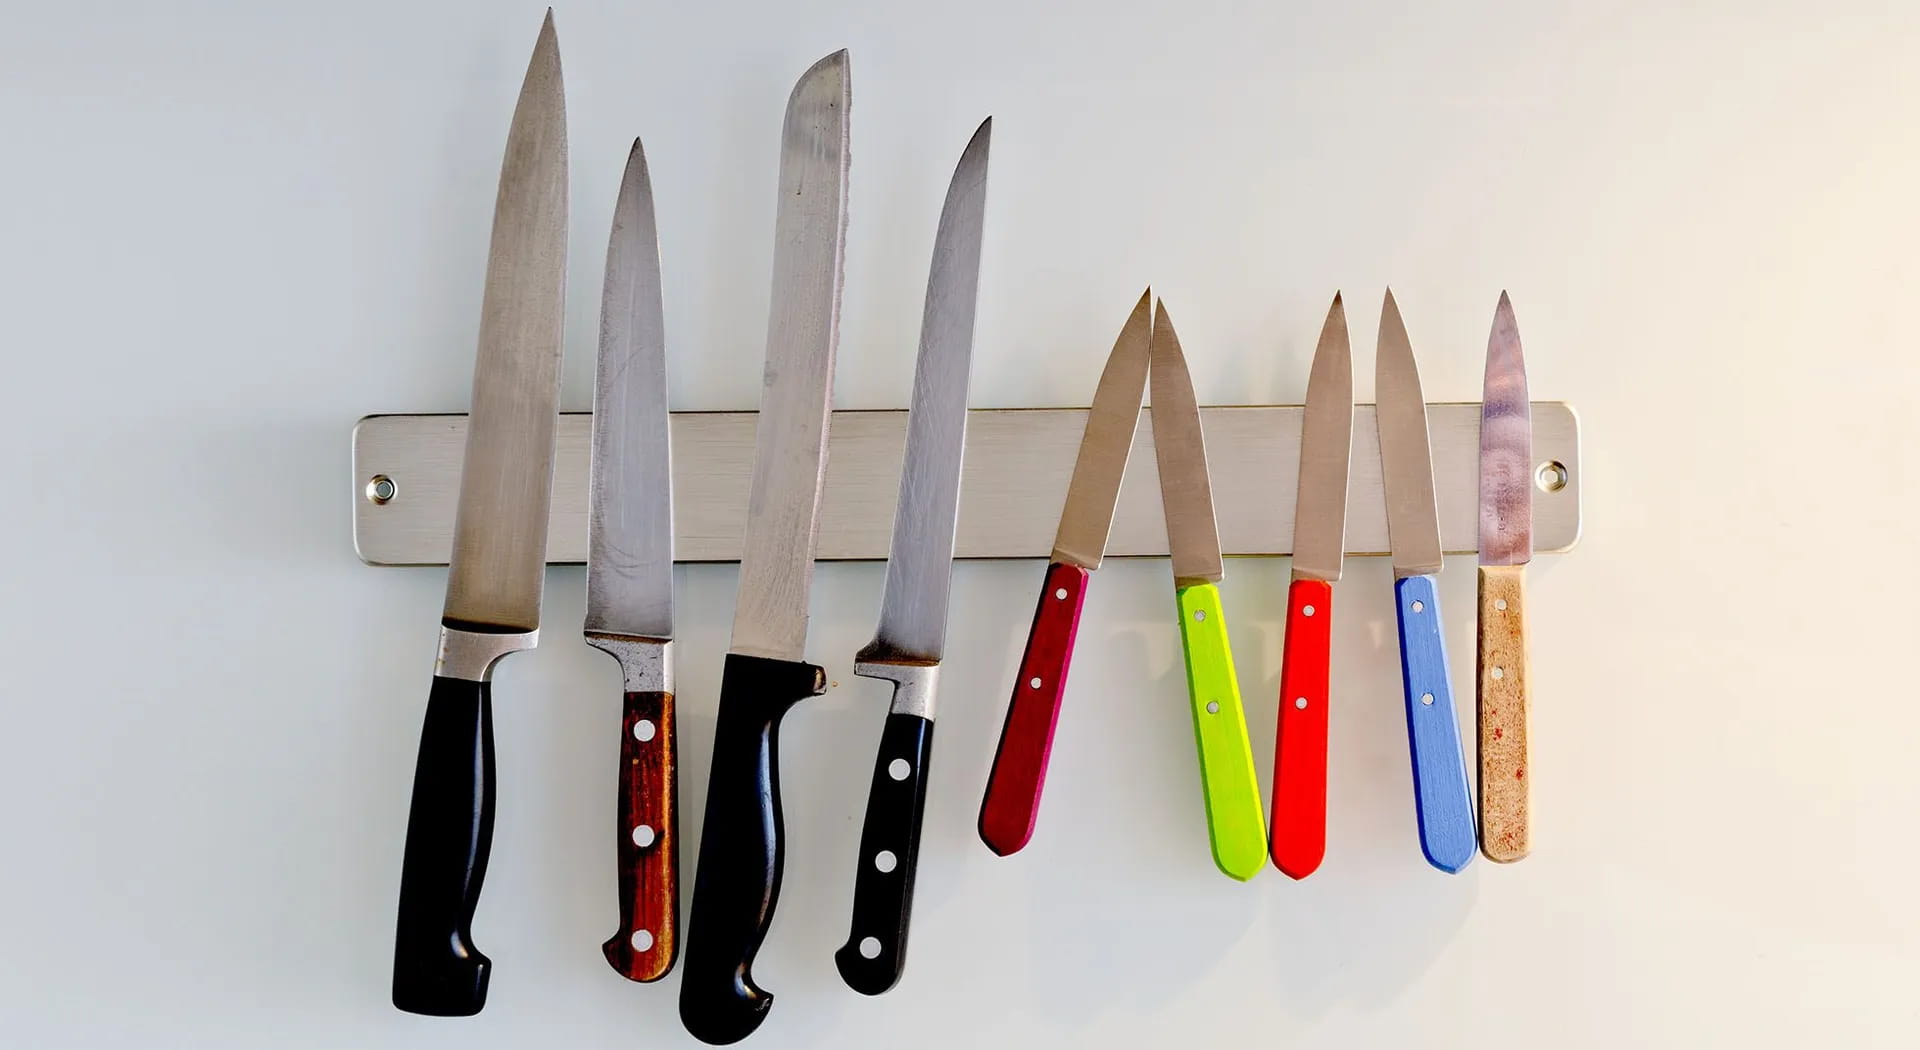 Guida all’uso dei coltelli in cucina